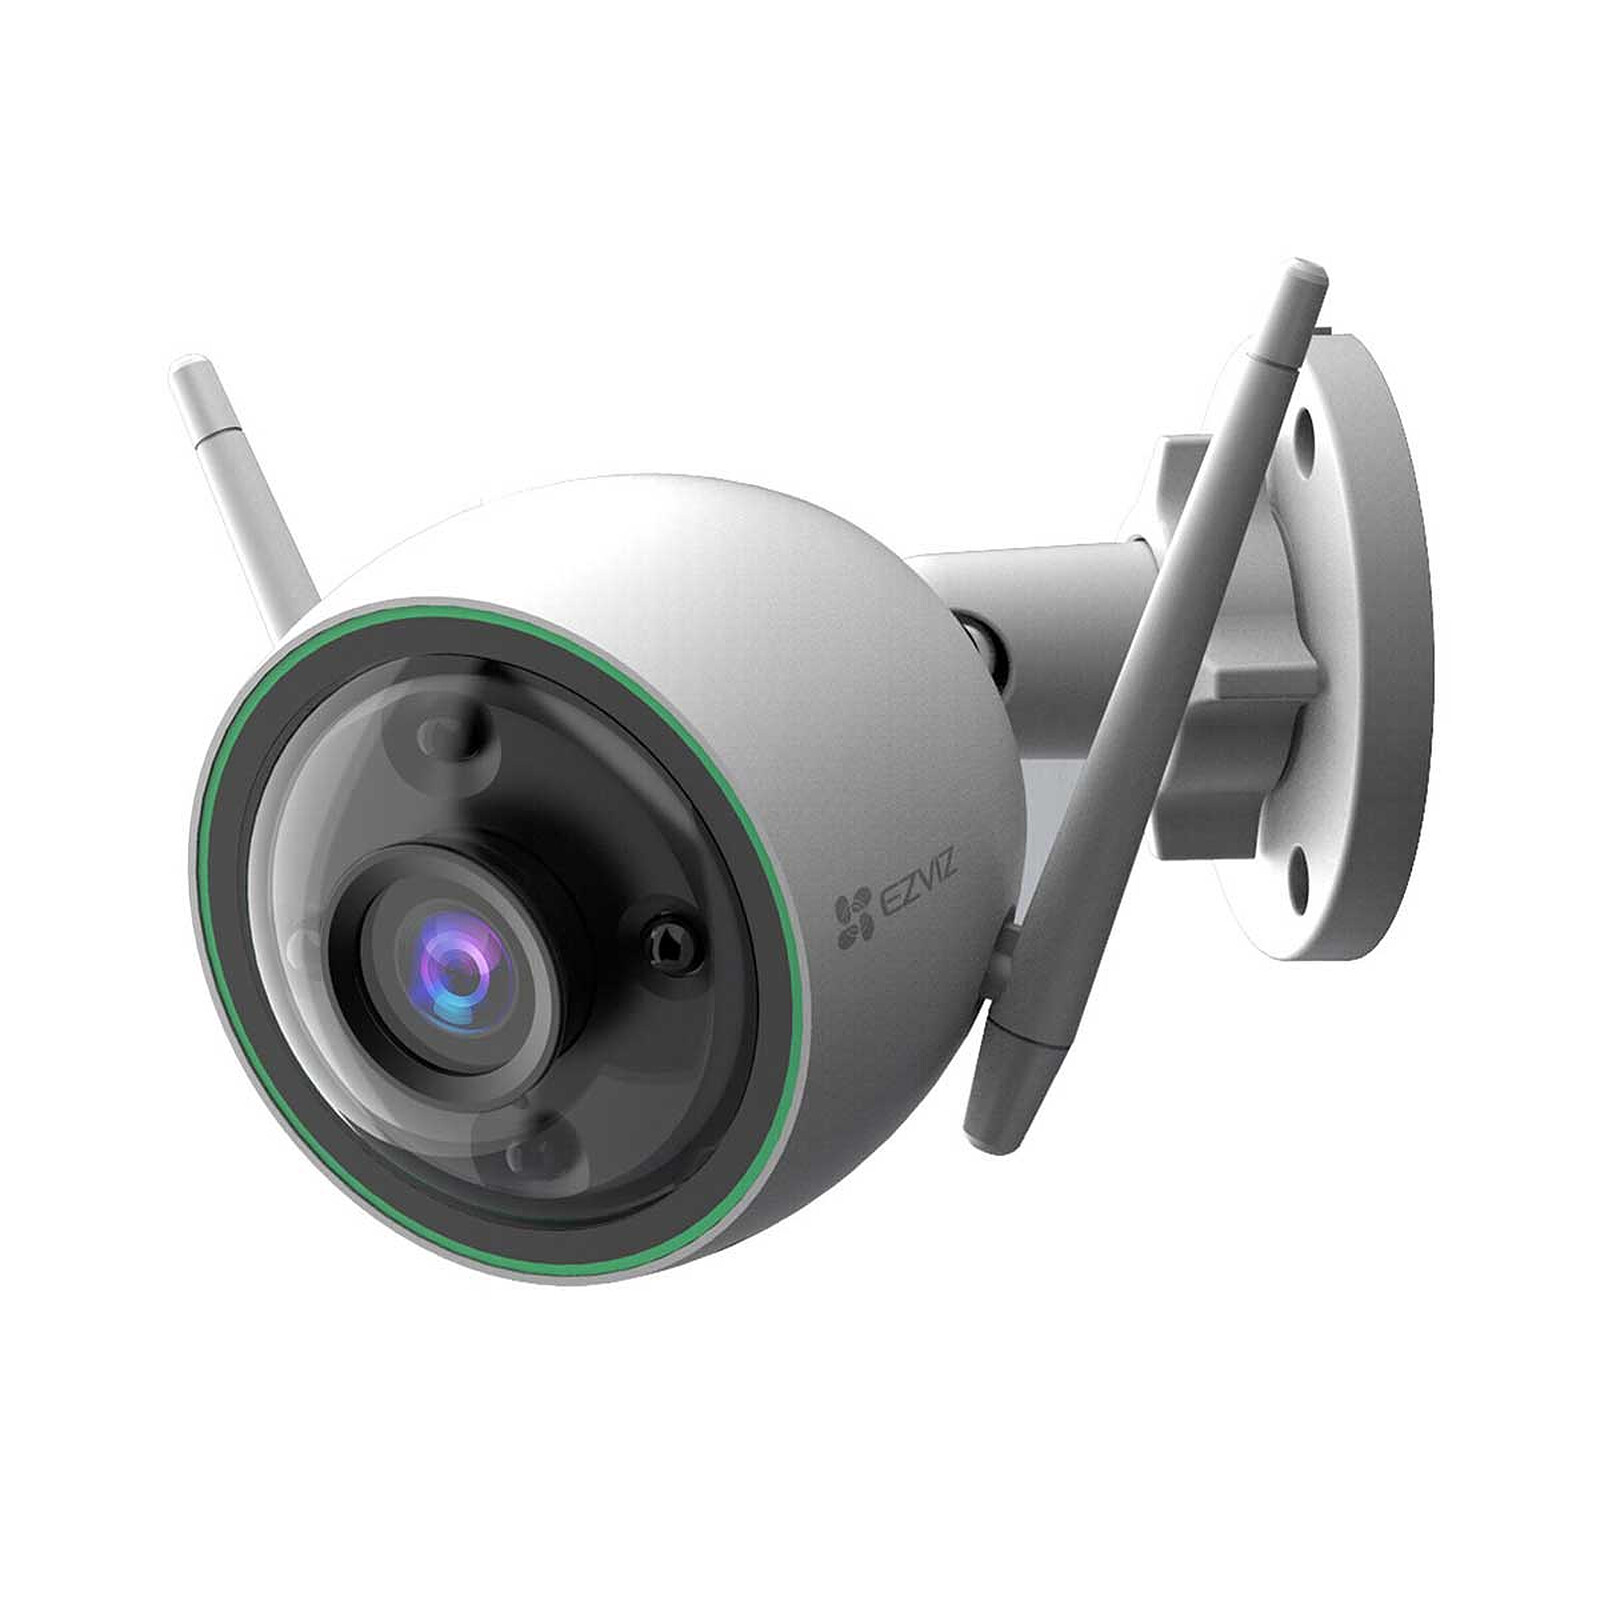 Projecteur infrarouge IR portée 80 mètres pour vidéo surveillance de nuit